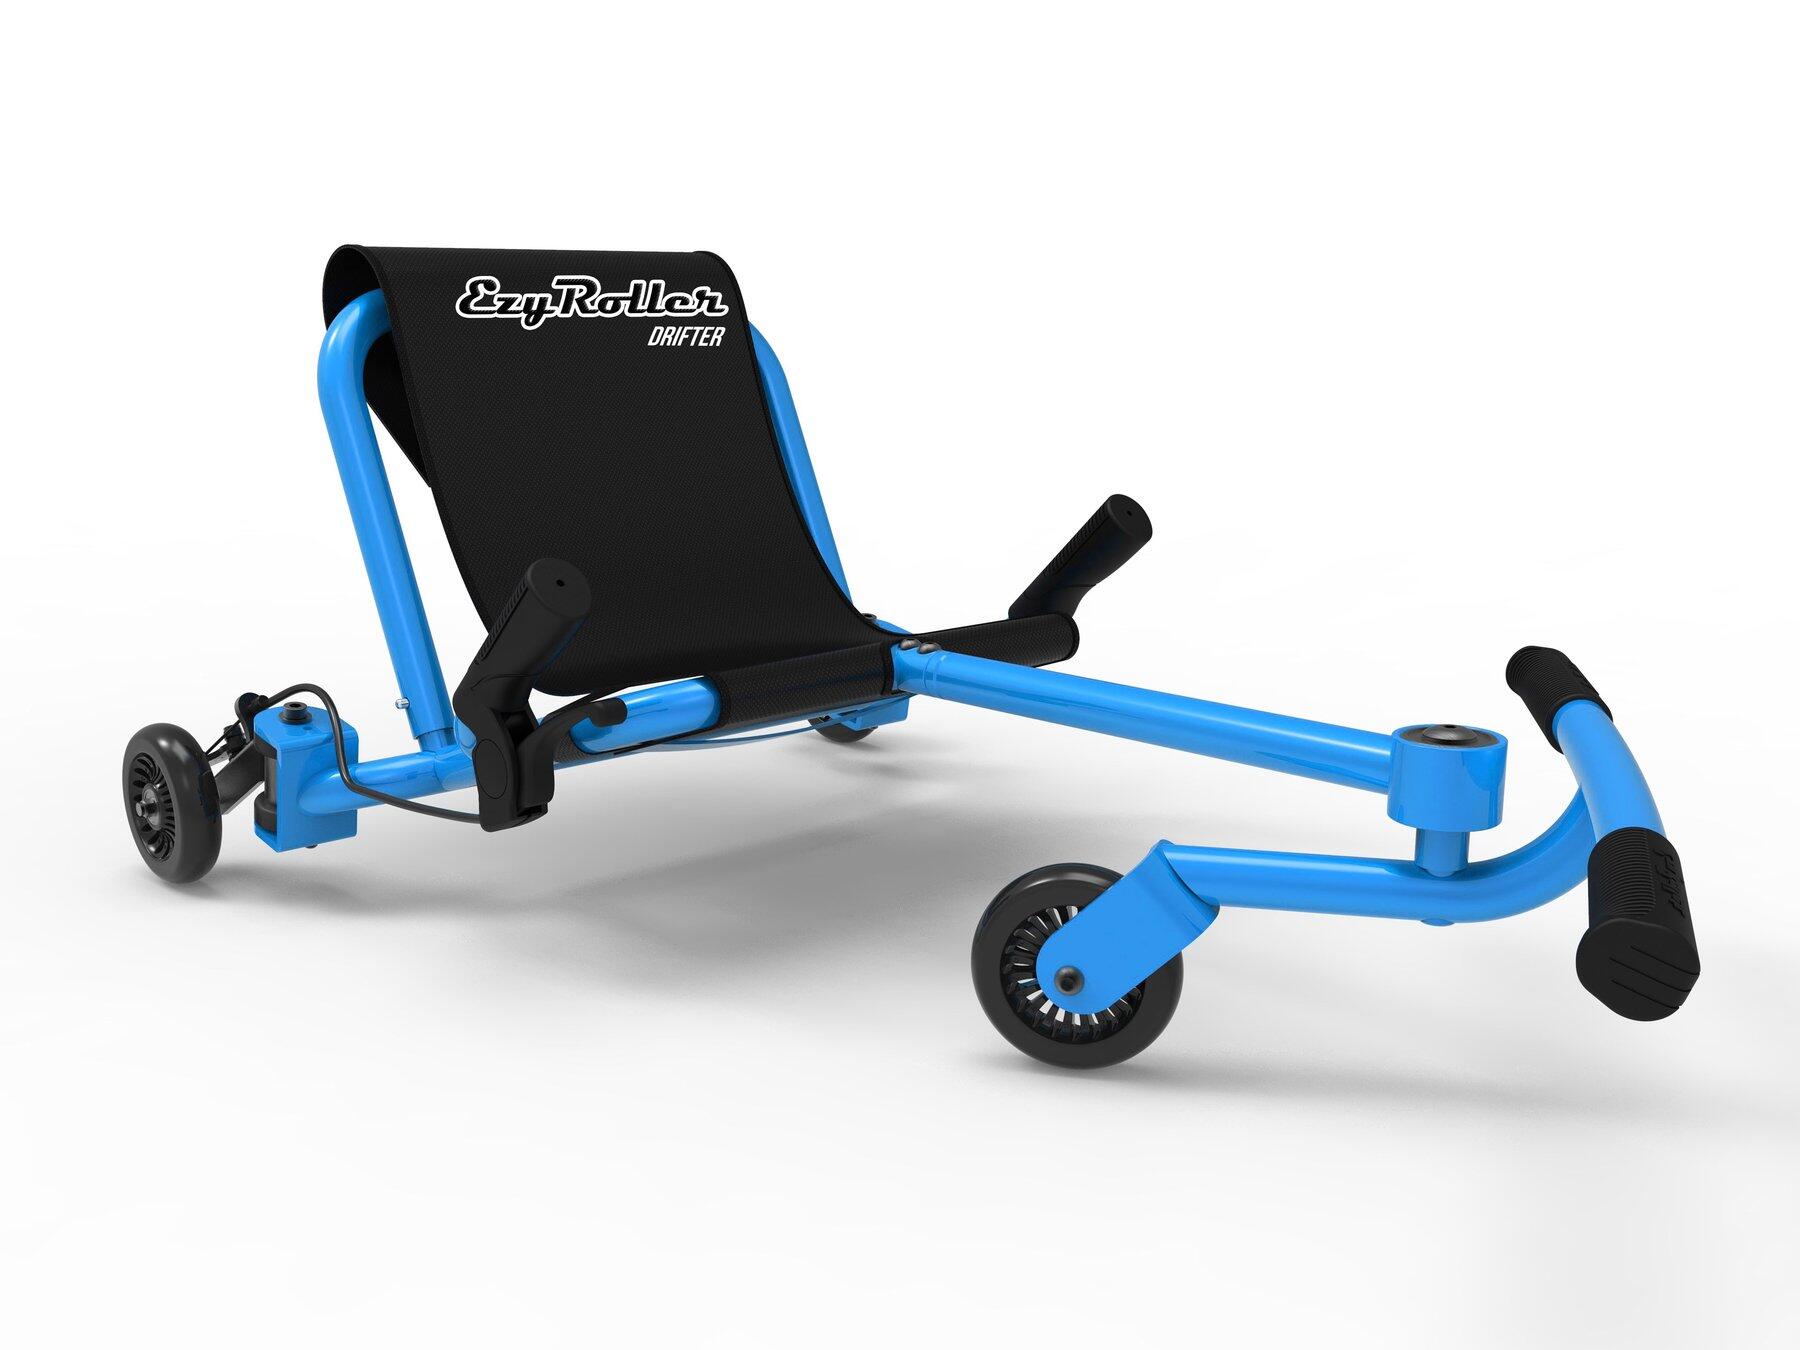 Ezy Roller DRIFTER Kart Trike Weave Ride On - Blue 1/5